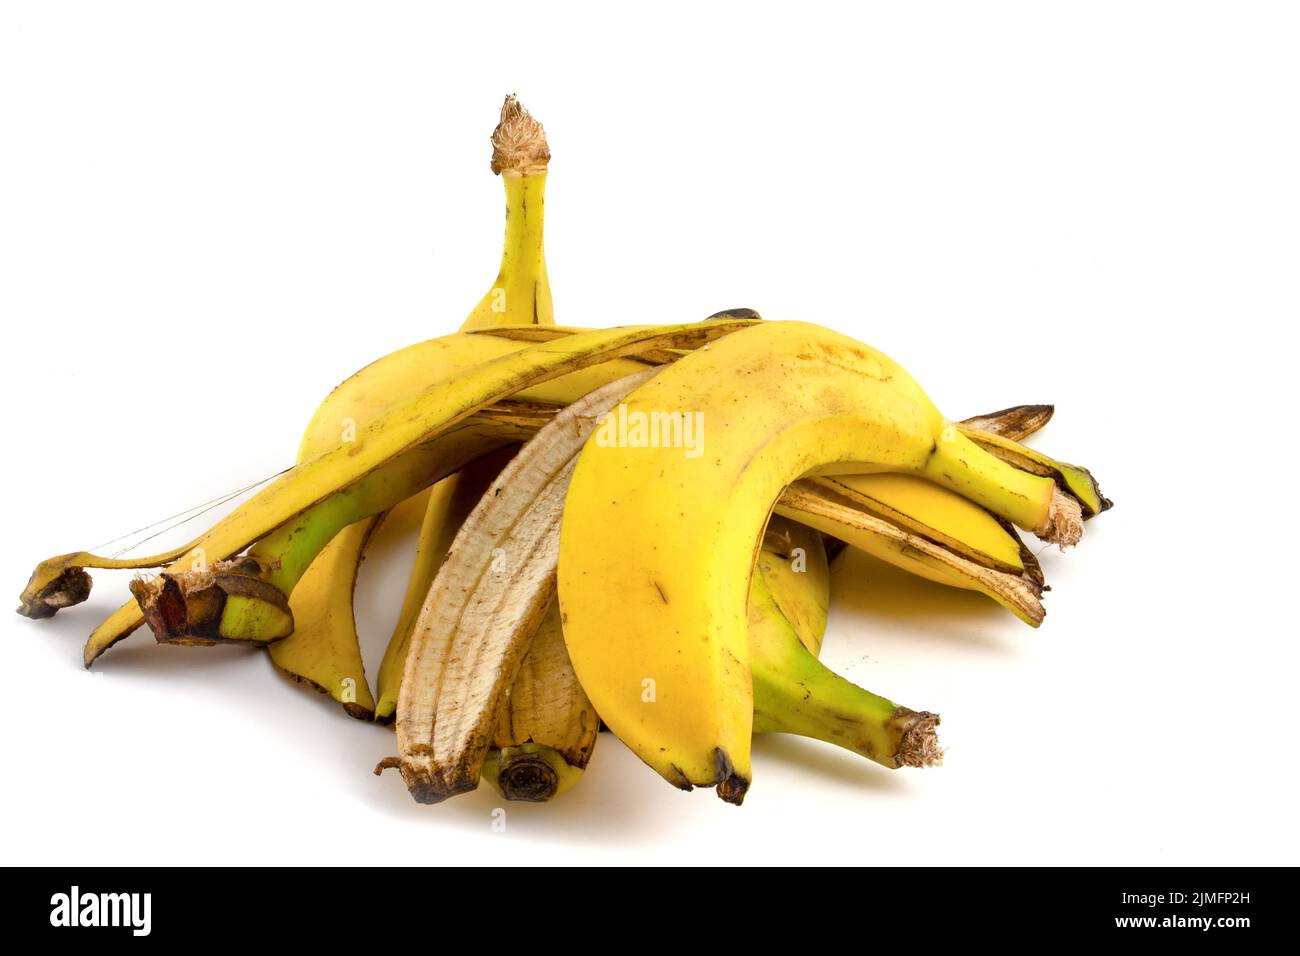 Mazzo di buccia di banana isolato su sfondo bianco. Residui organici dei rifiuti di frutta. Foto Stock